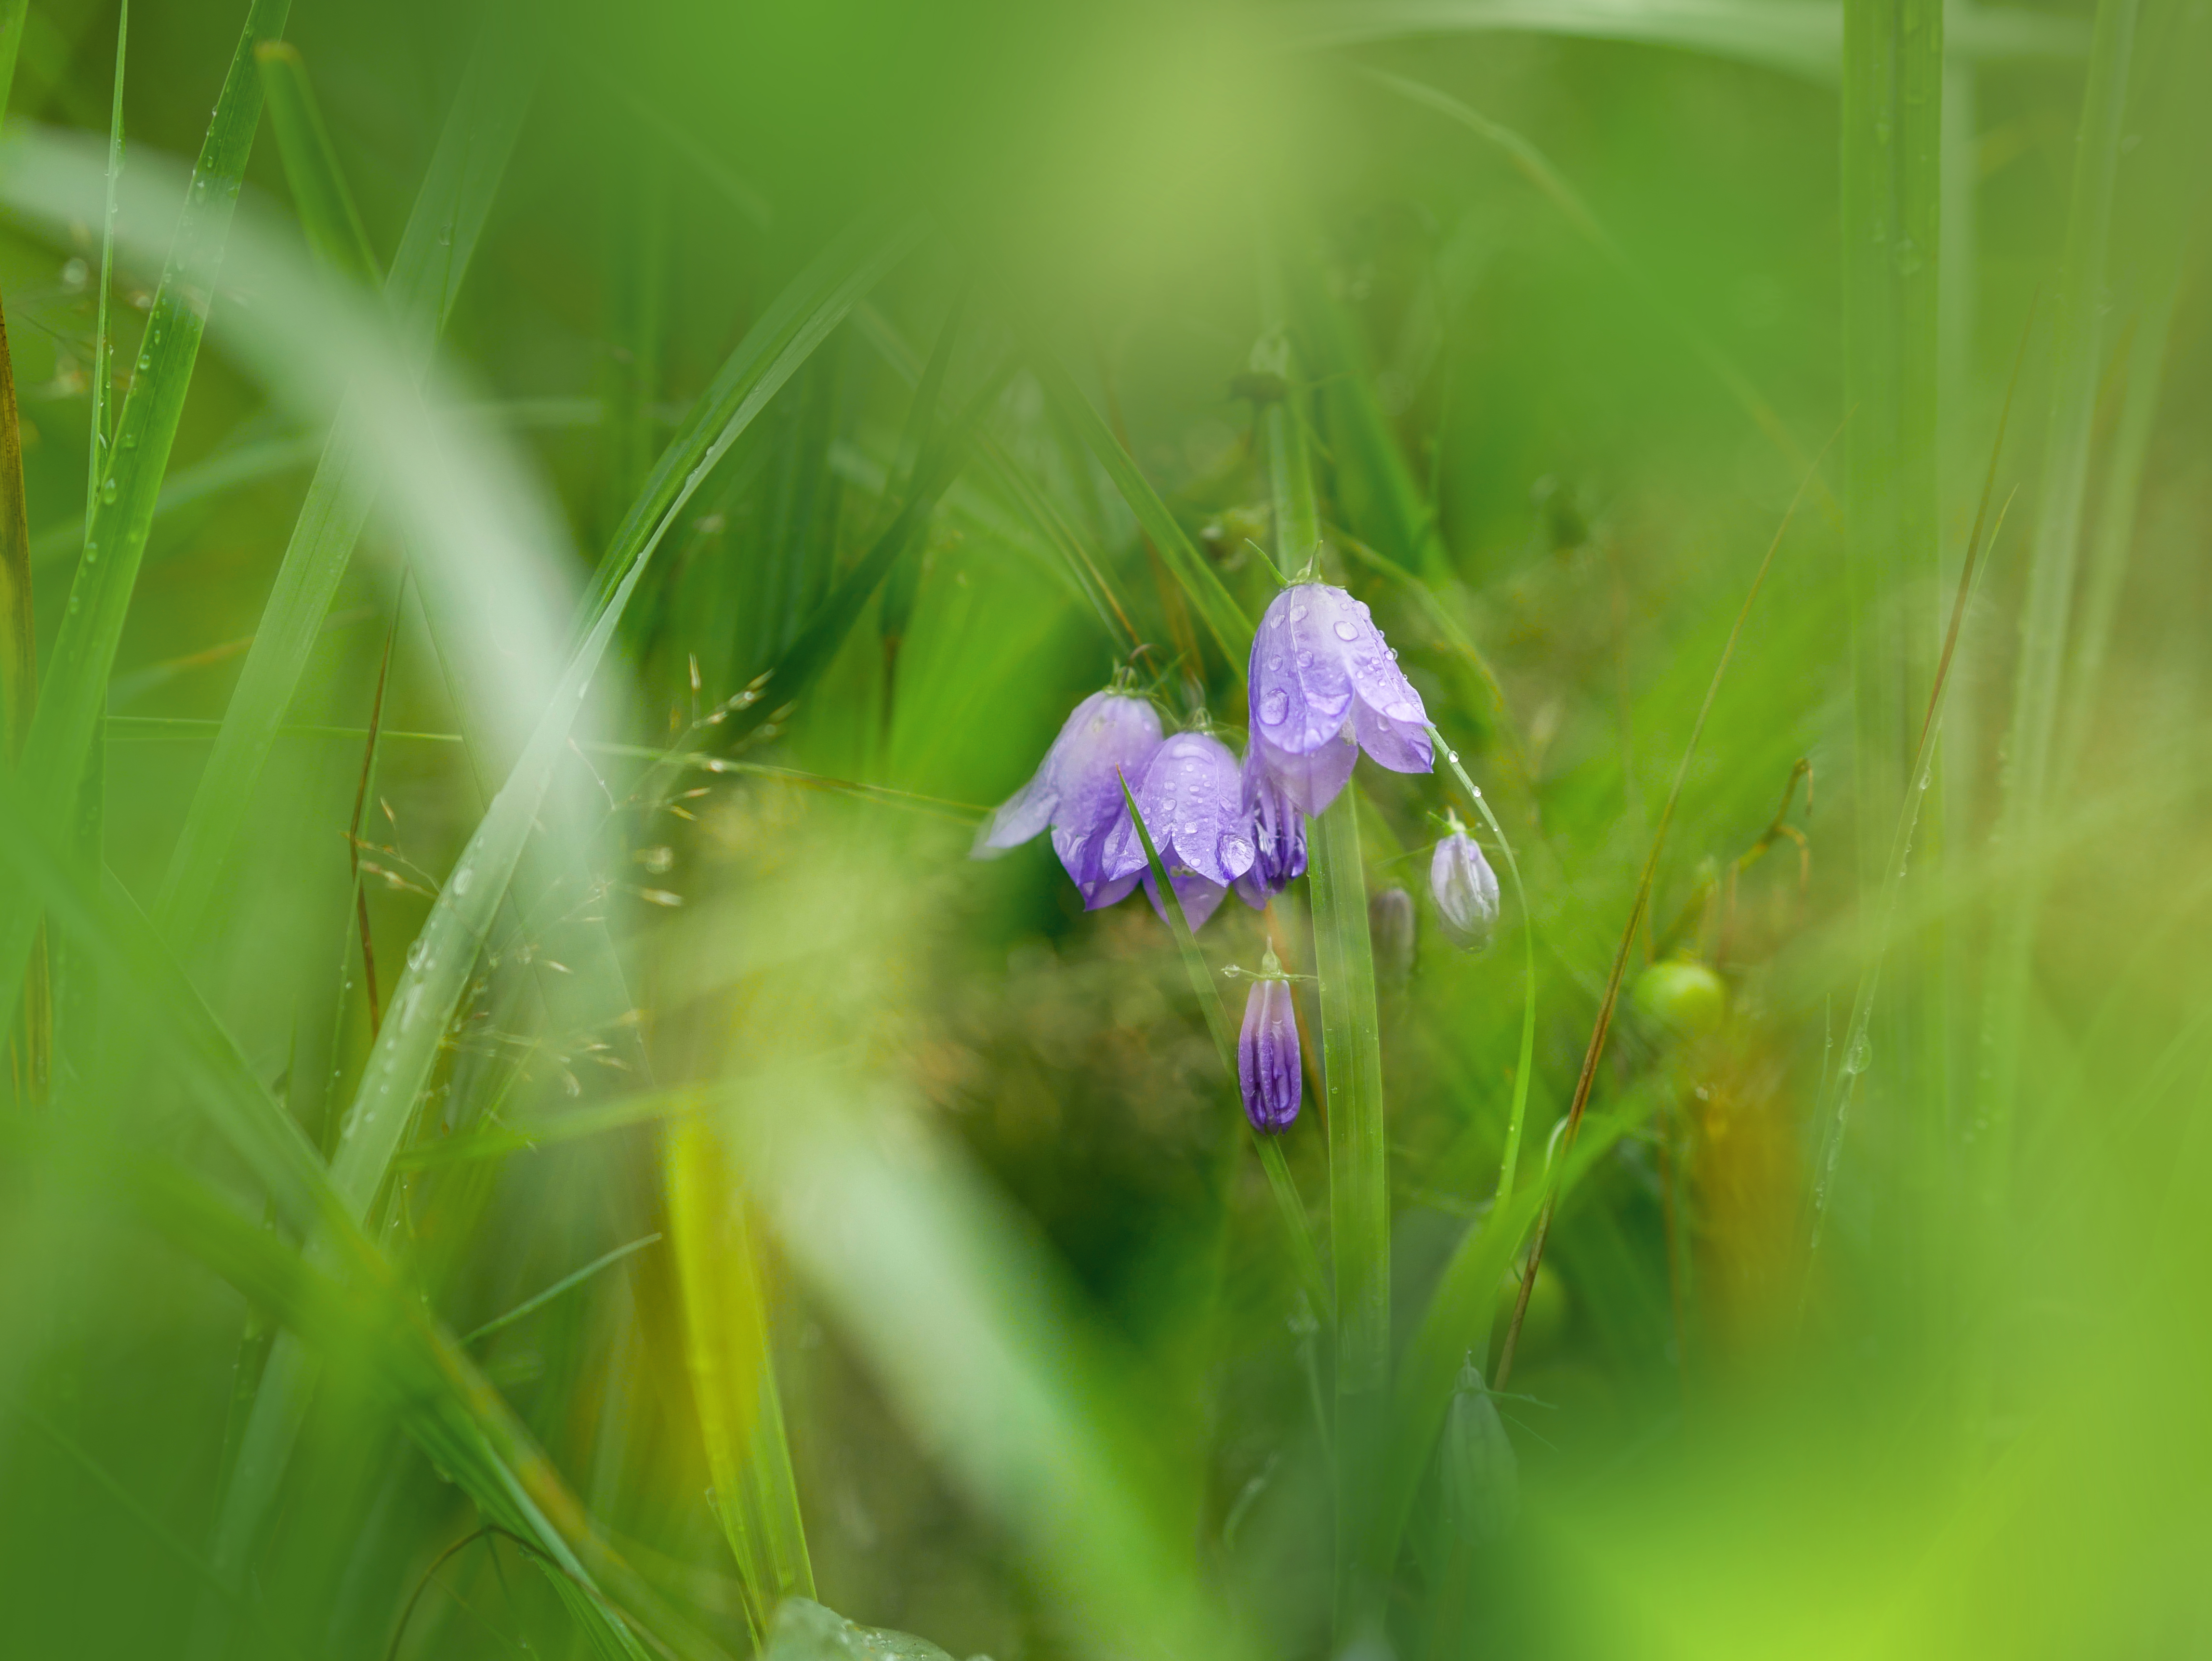 Purple bell-shaped flowers in green grass